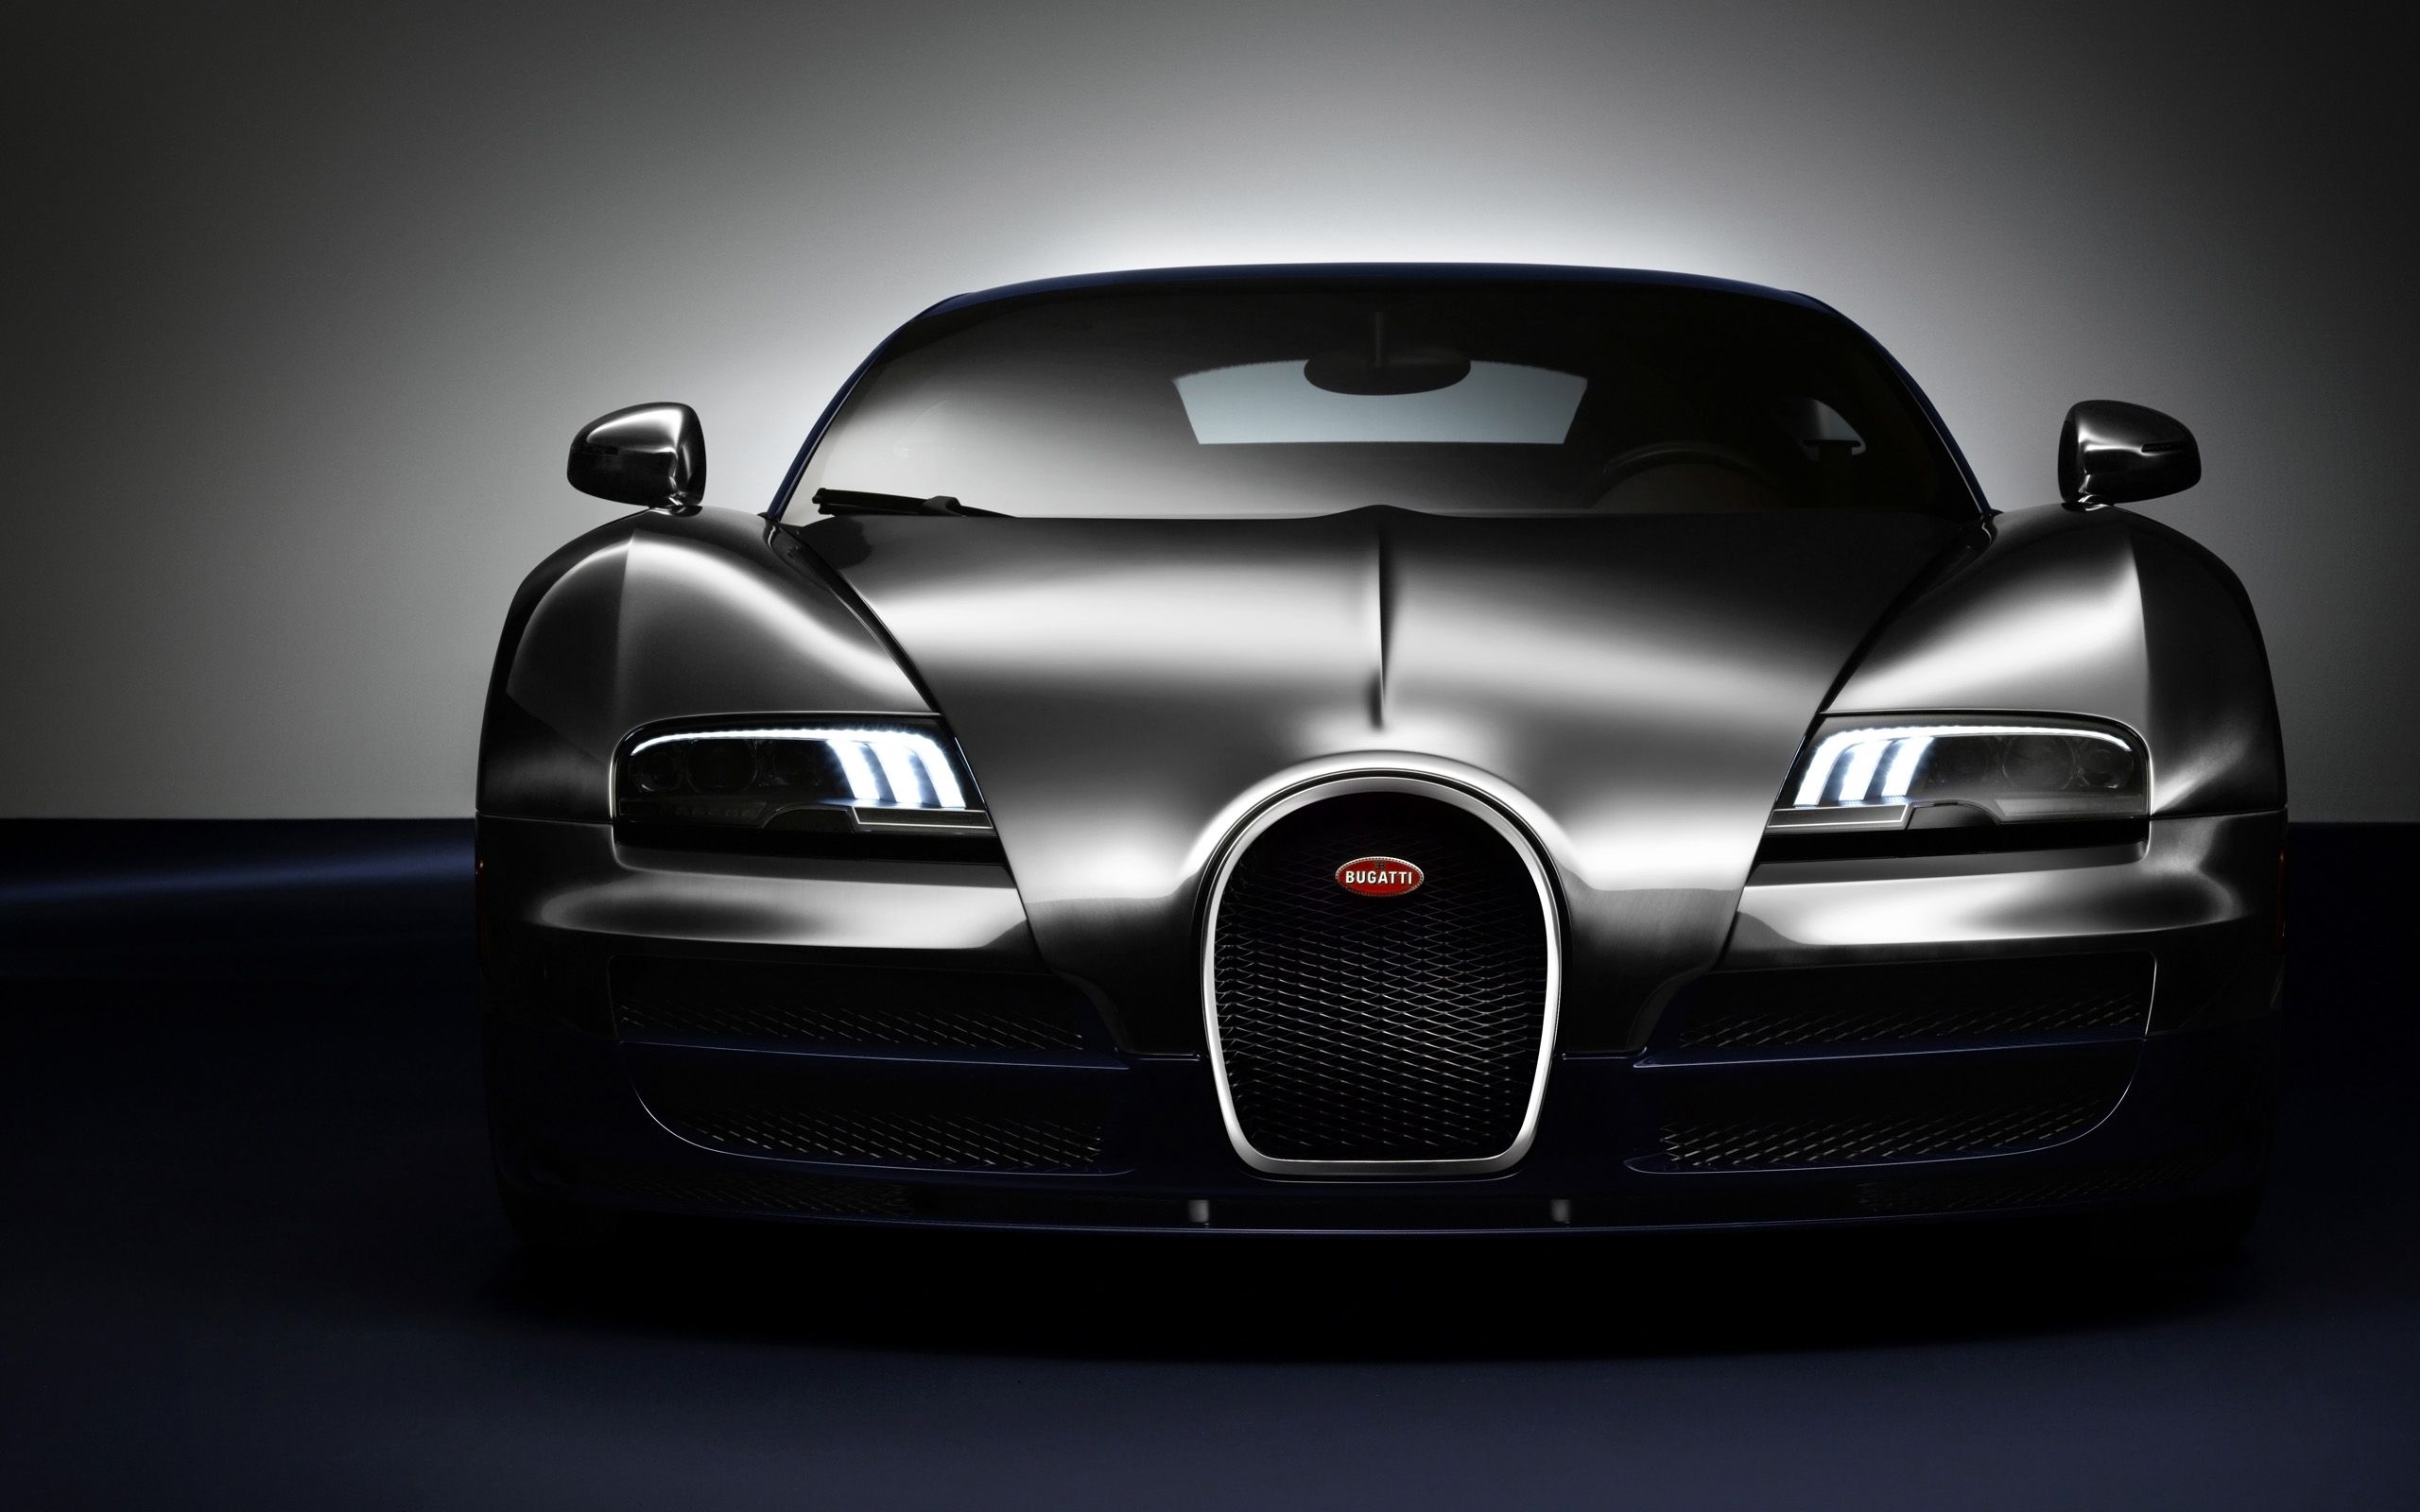 2014 Bugatti Veyron Ettore Bugatti Legend Edition 2 Wallpaper | HD ...